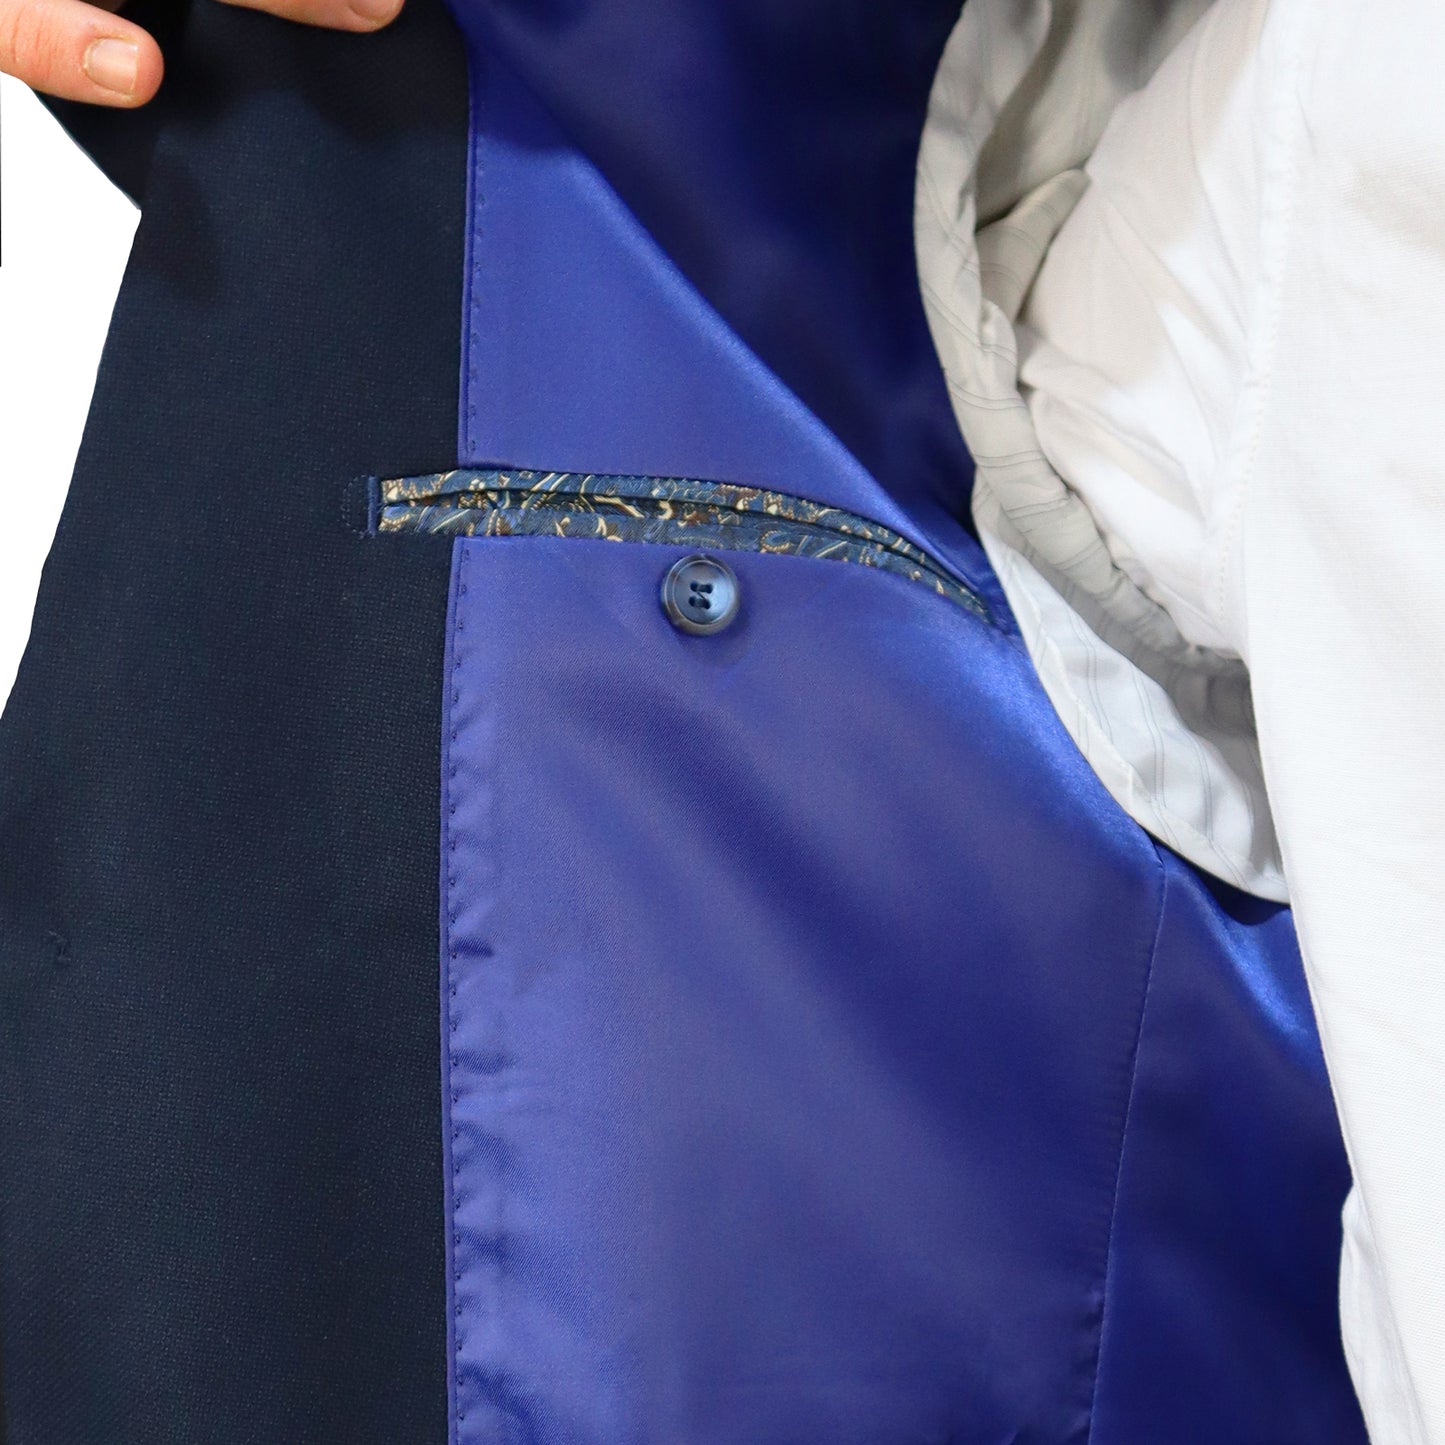 Σακάκι Blazer Ανδρικό Μπλε Πολυεστερικό (Poly/Visc/Spandex) Semi Slim Fit 5216-080 302617 NAVY